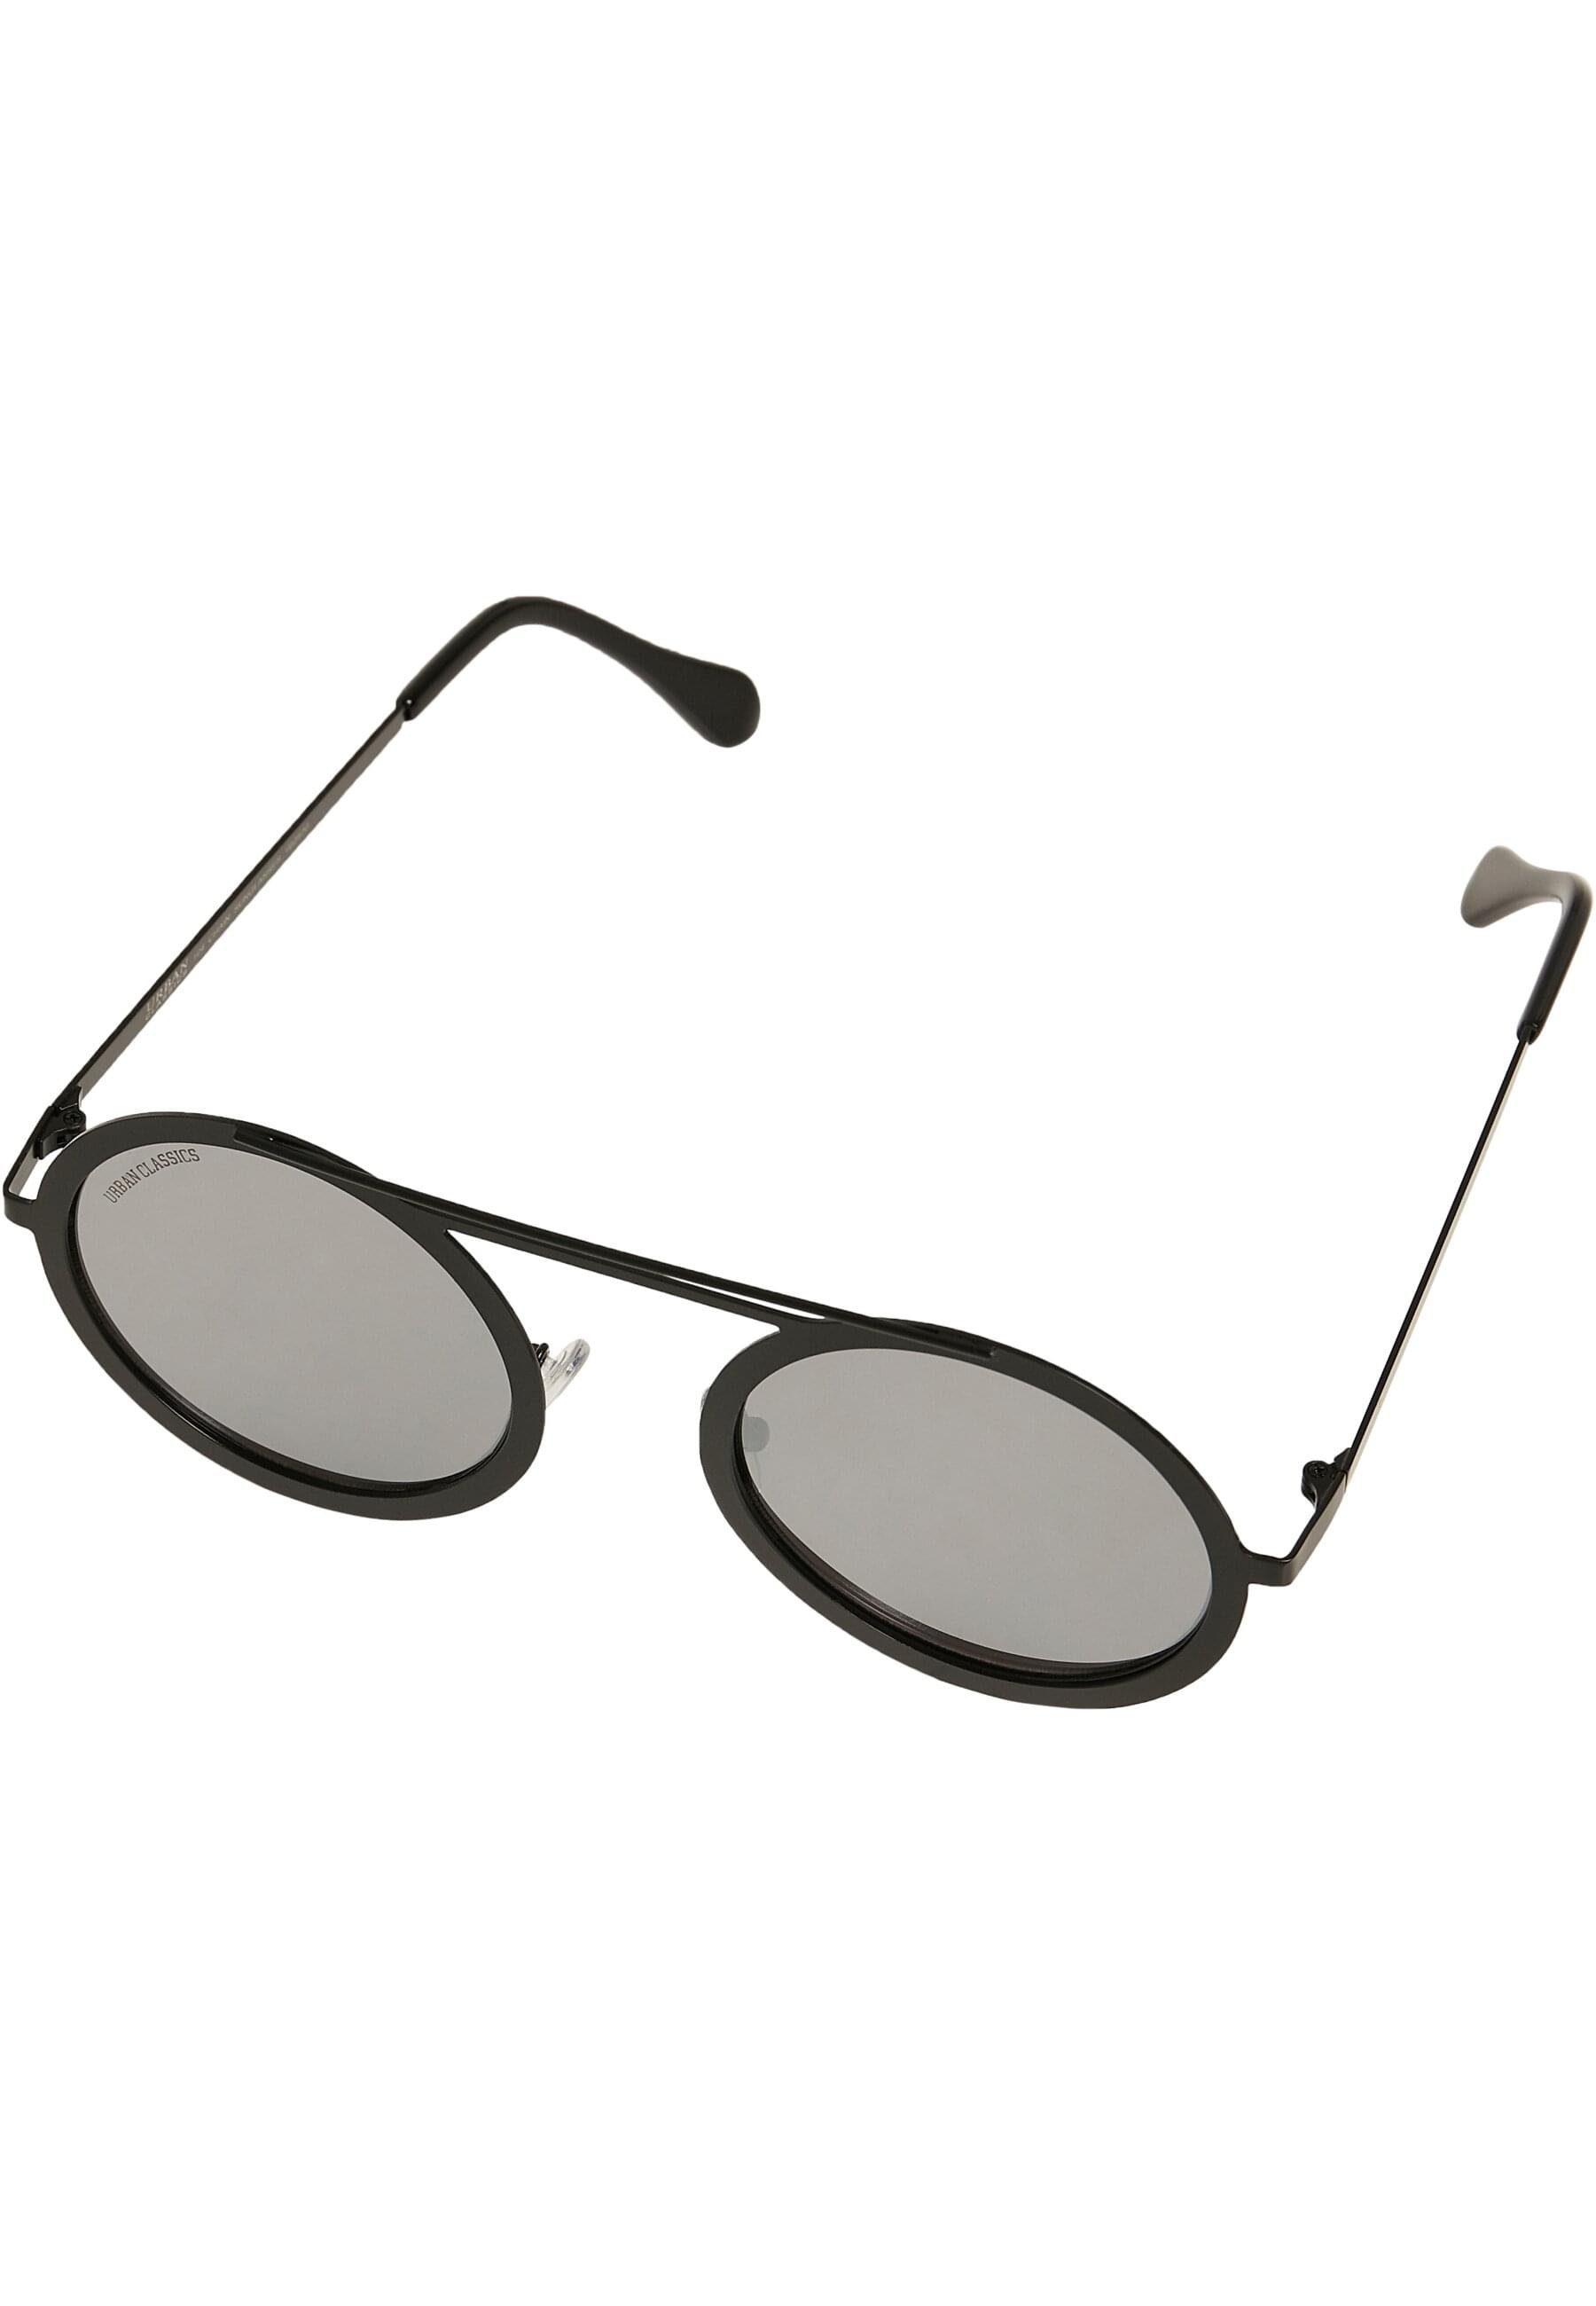 URBAN CLASSICS Sonnenbrille Unisex 104 silver mirror/black Sunglasses Chain